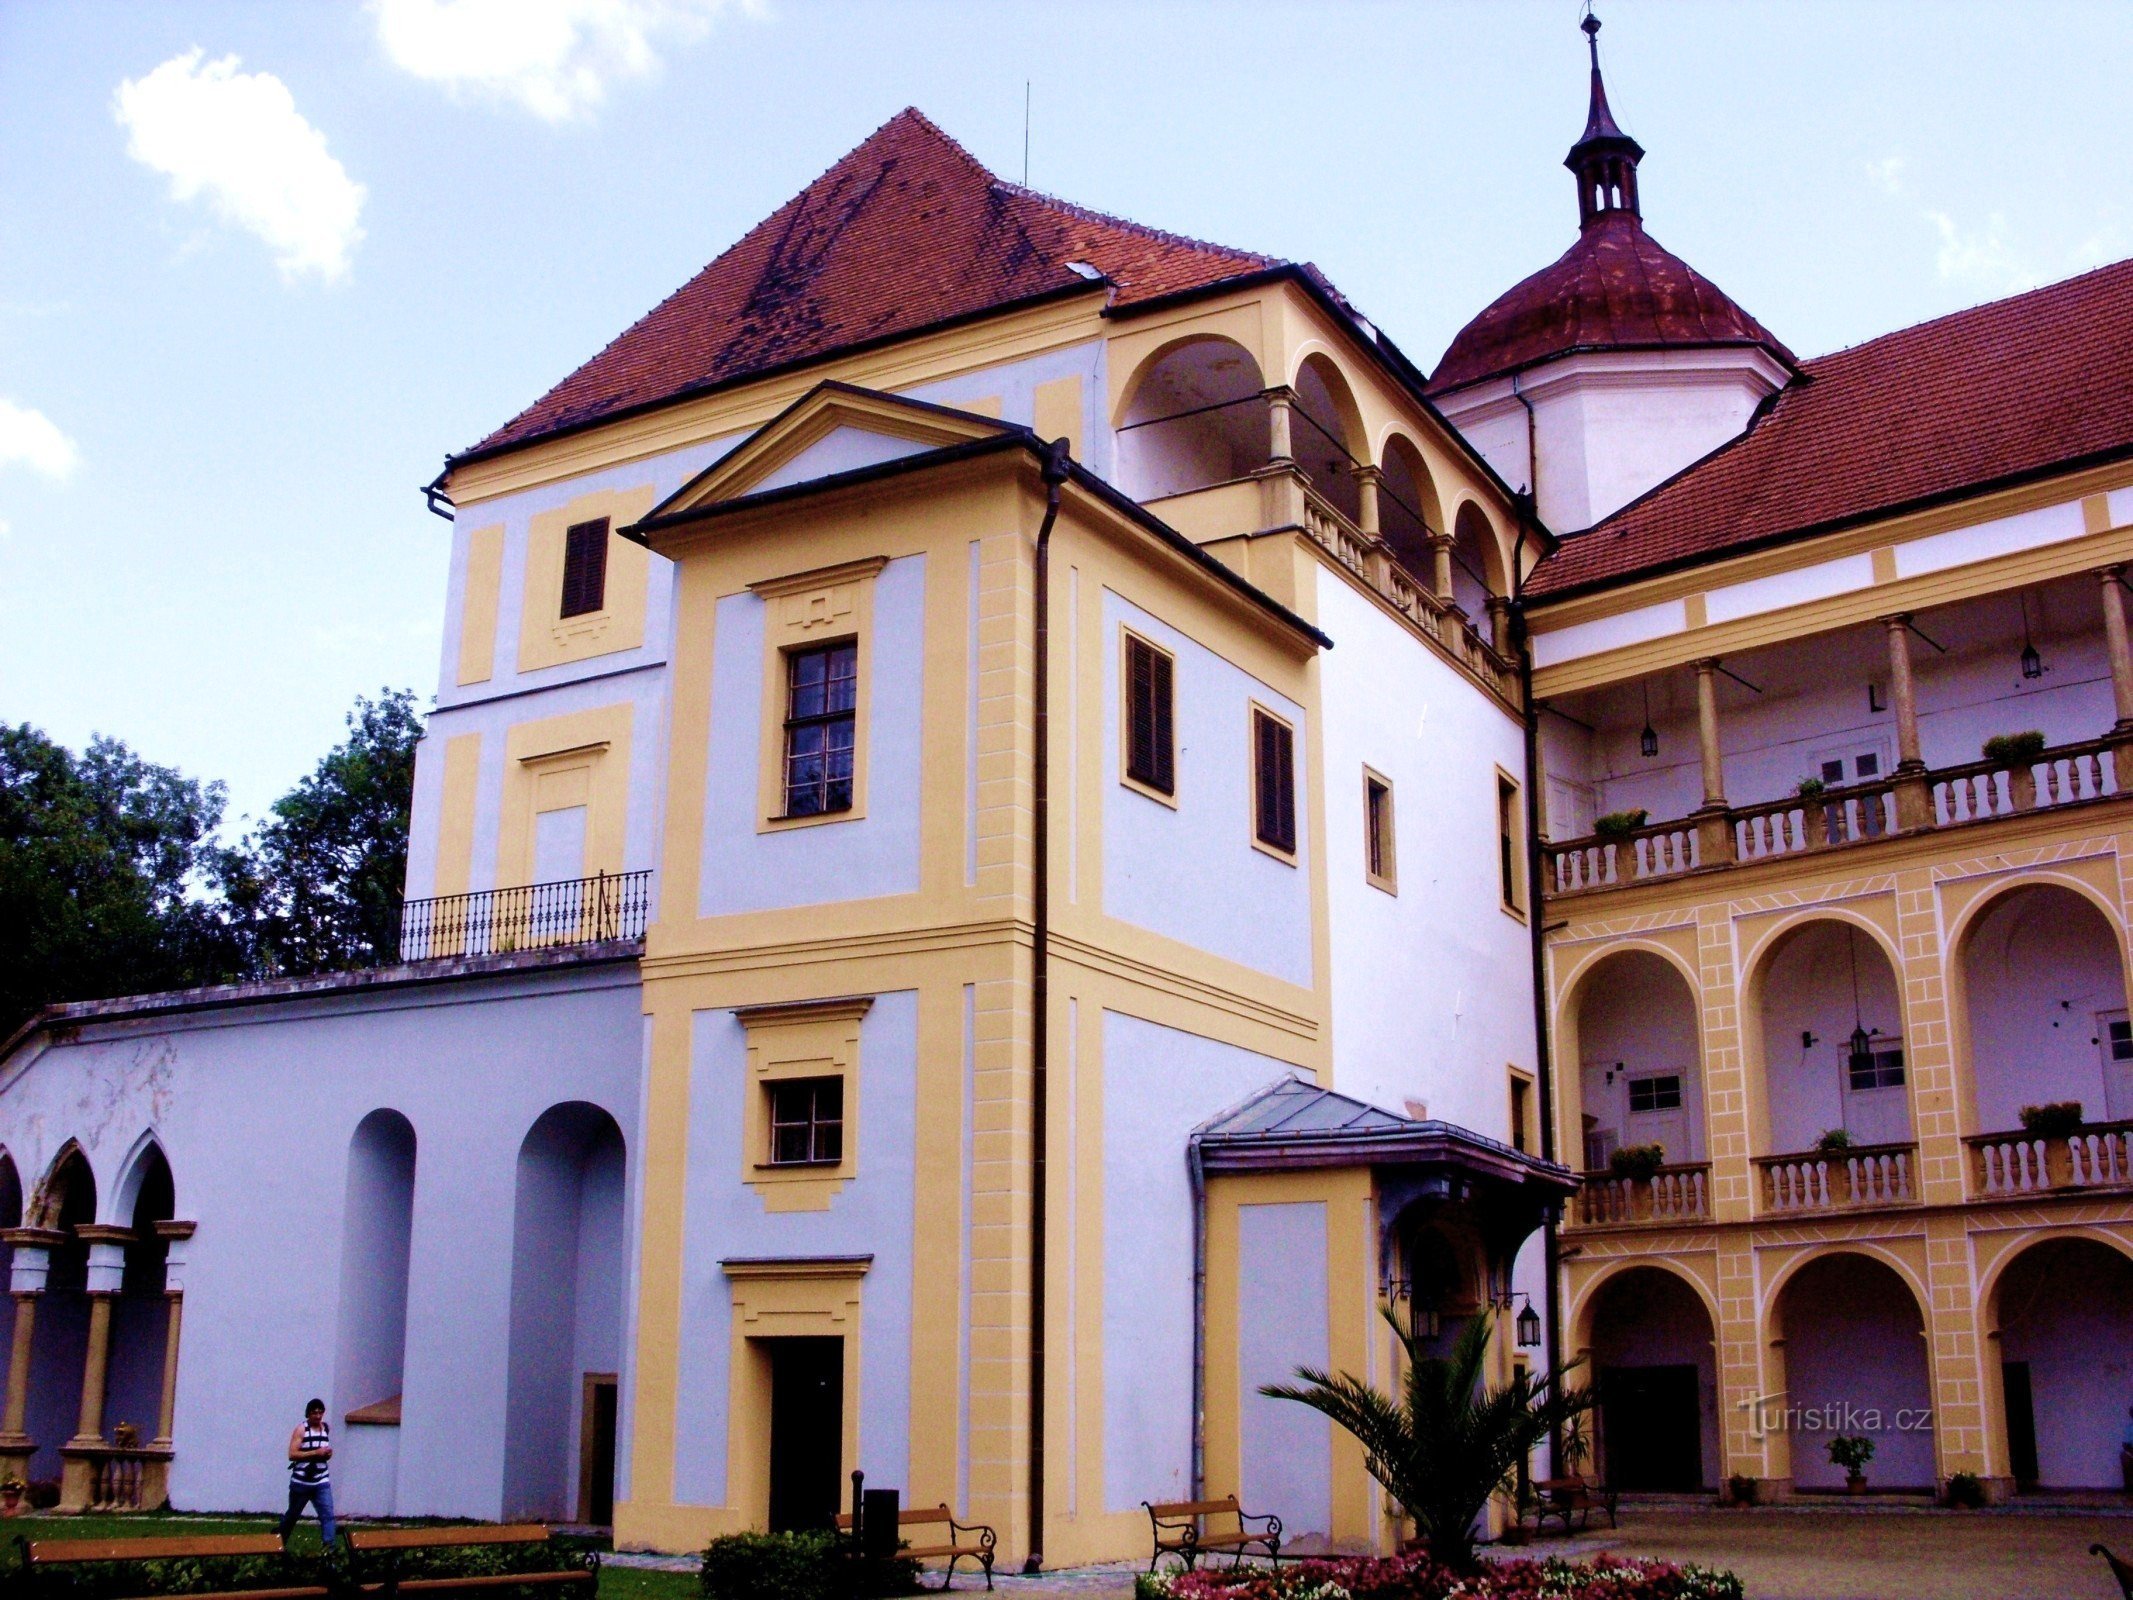 For en oplevelse på slottet i Tovačov